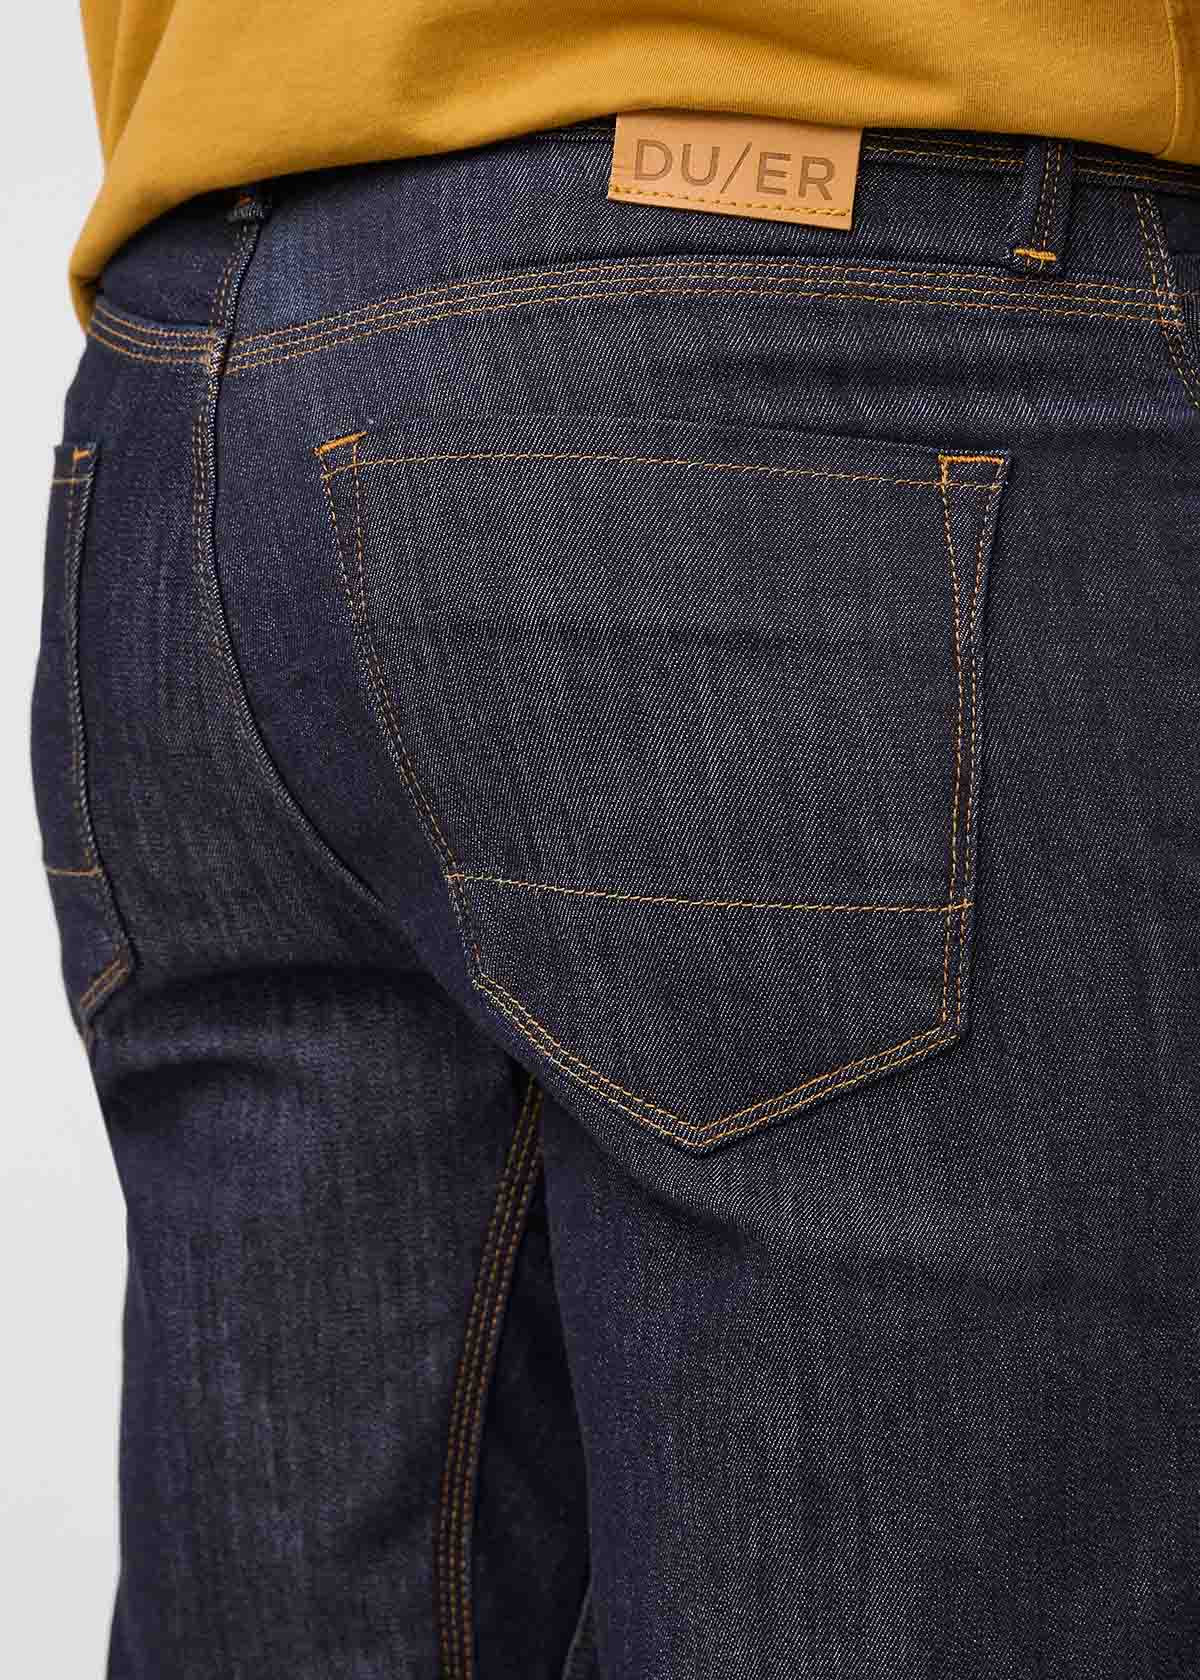 Men's Athletic Fit Jeans - Shop Athletic Jeans